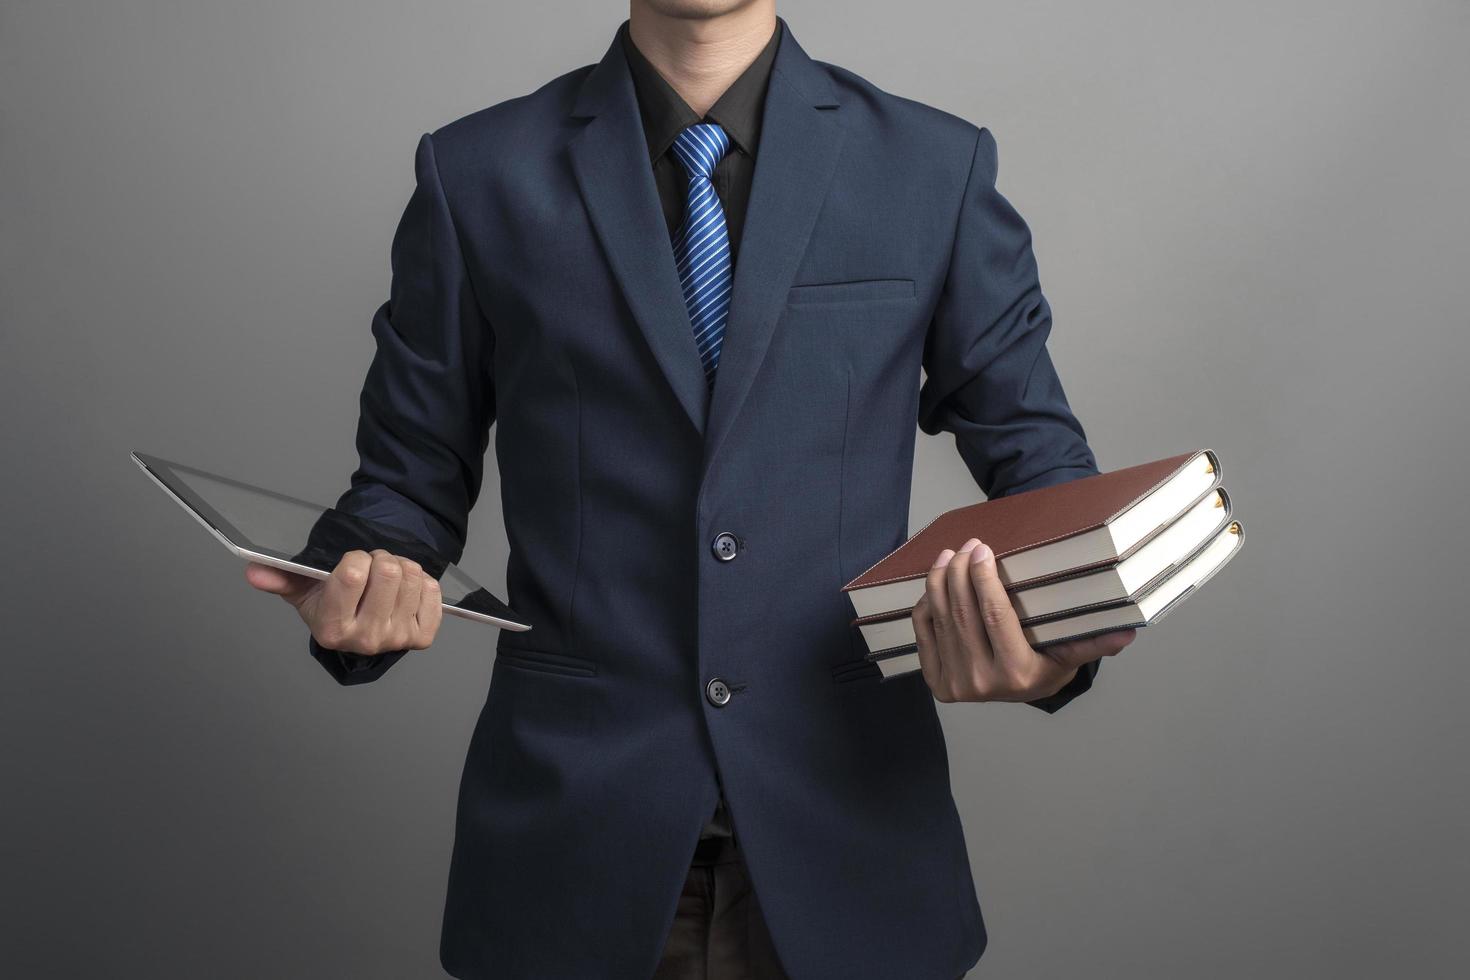 närbild av affärsmannen i blå kostym håller böcker på grå bakgrund foto